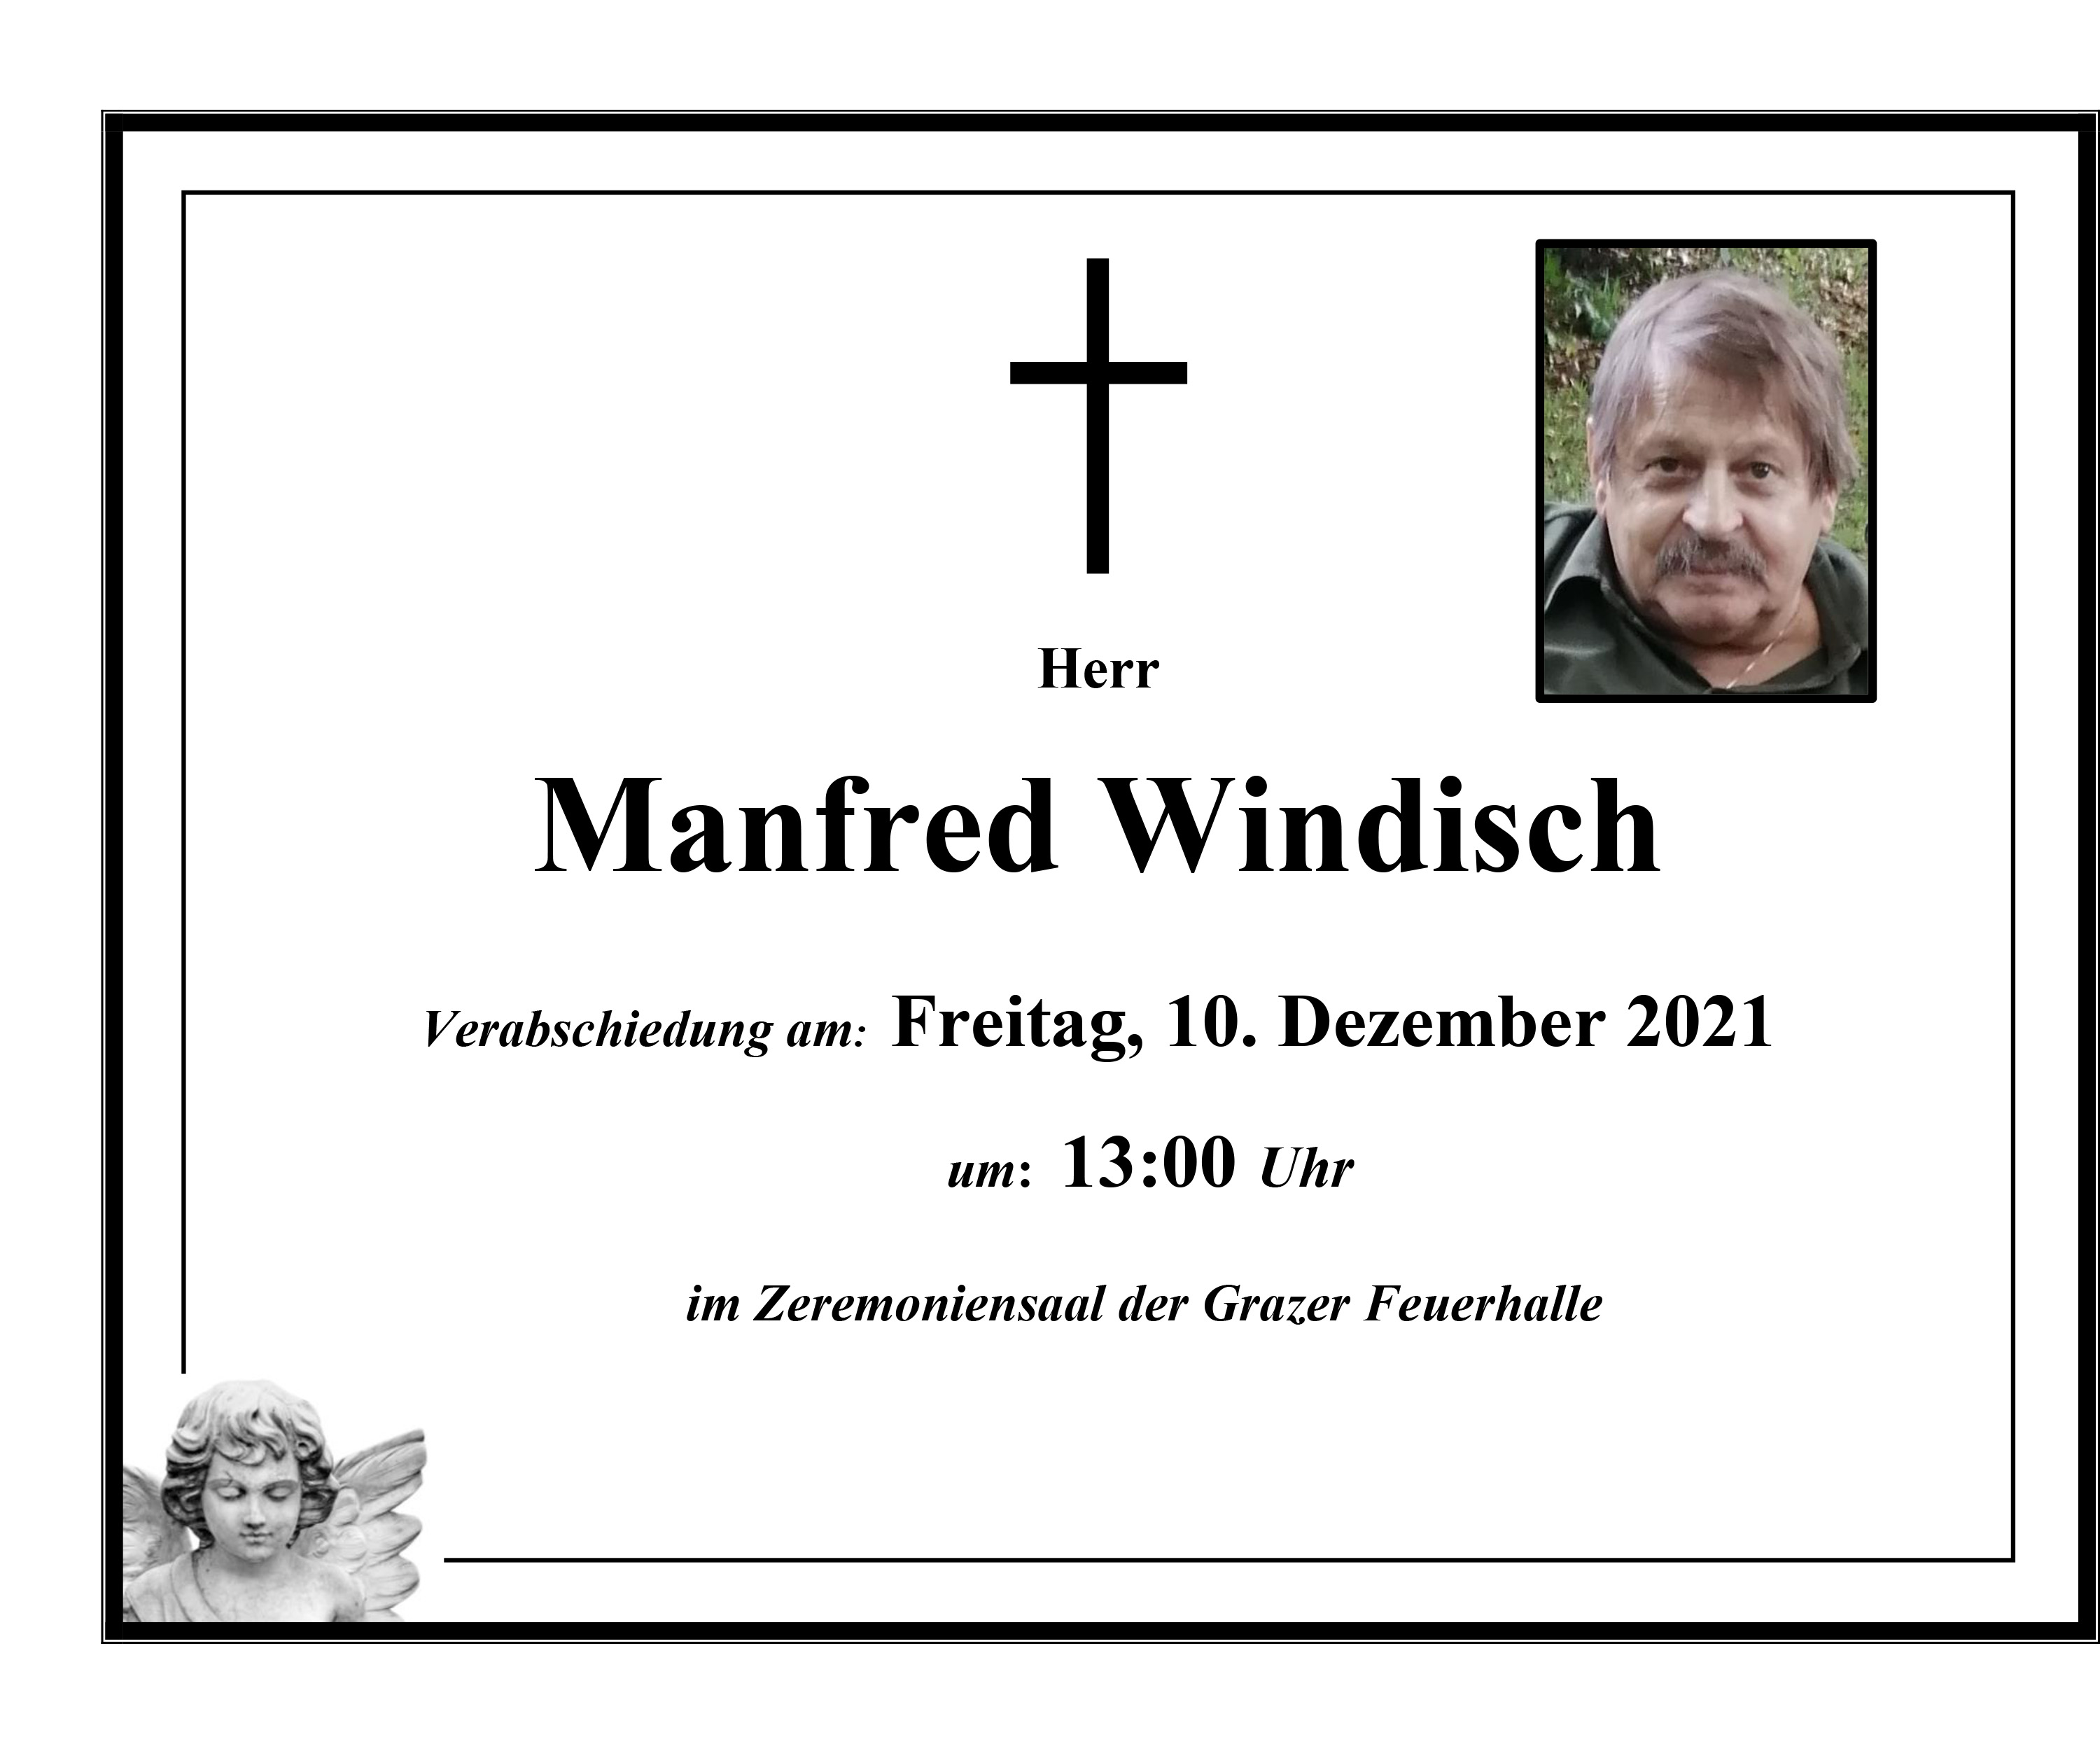 Manfred Windisch